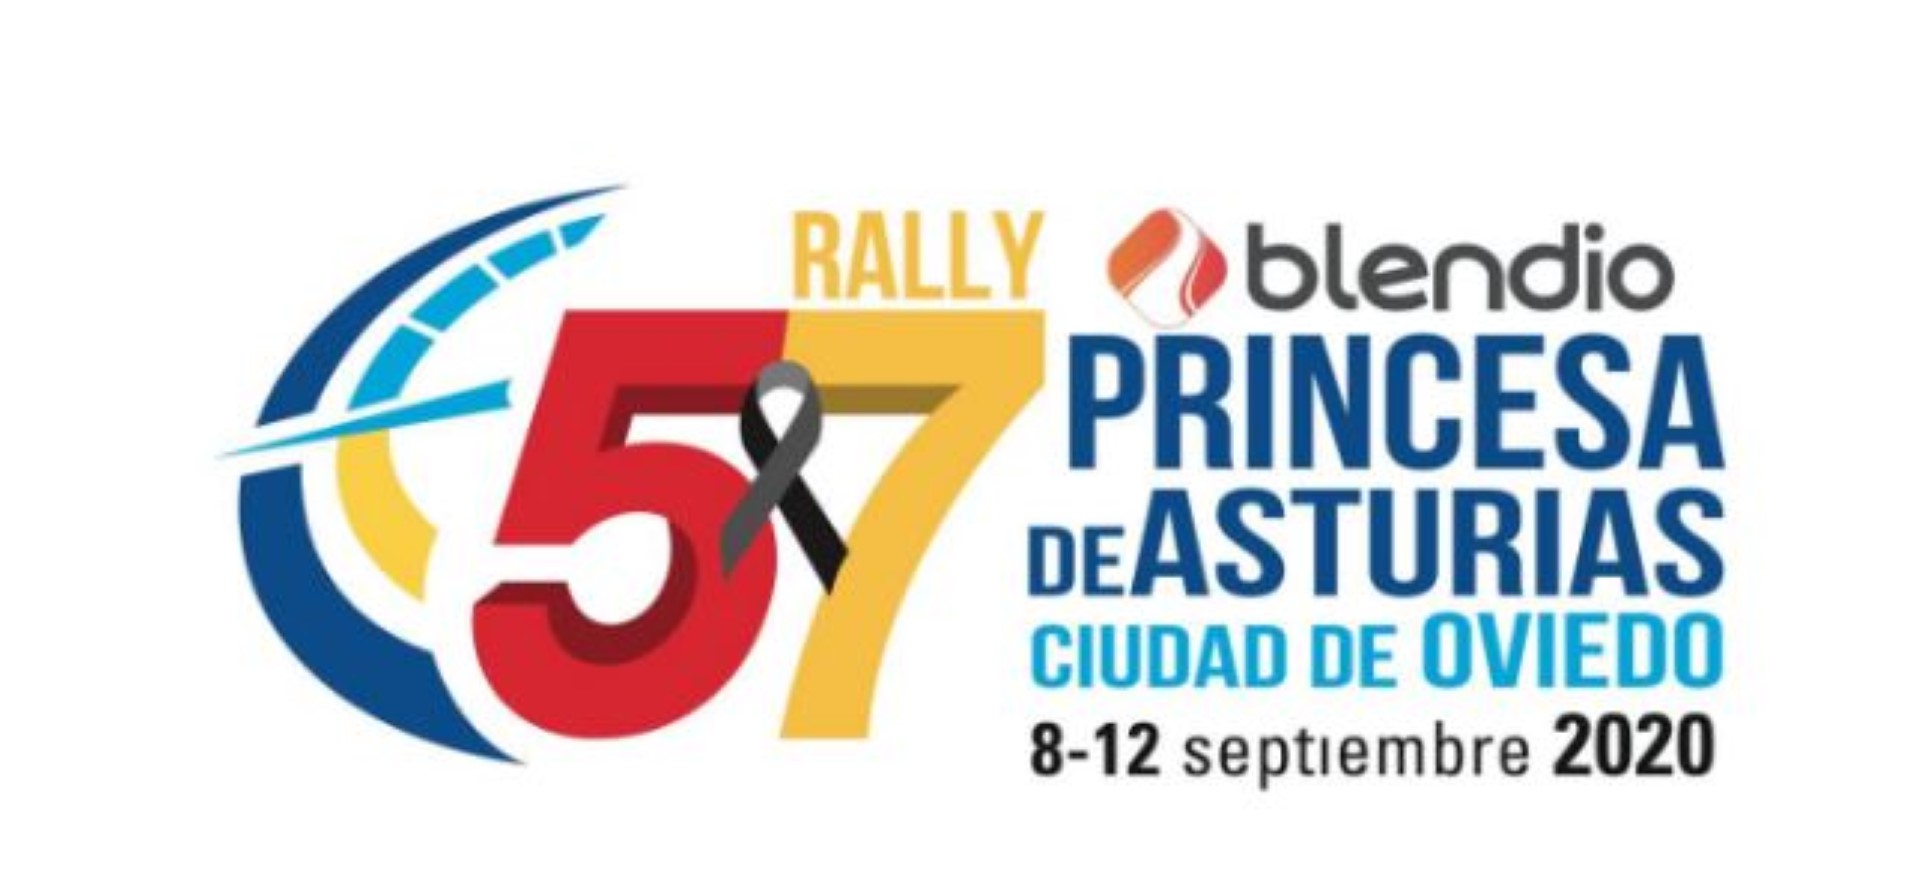 El rally Princesa de Asturias 2020 aplazado por Coronavirus 2